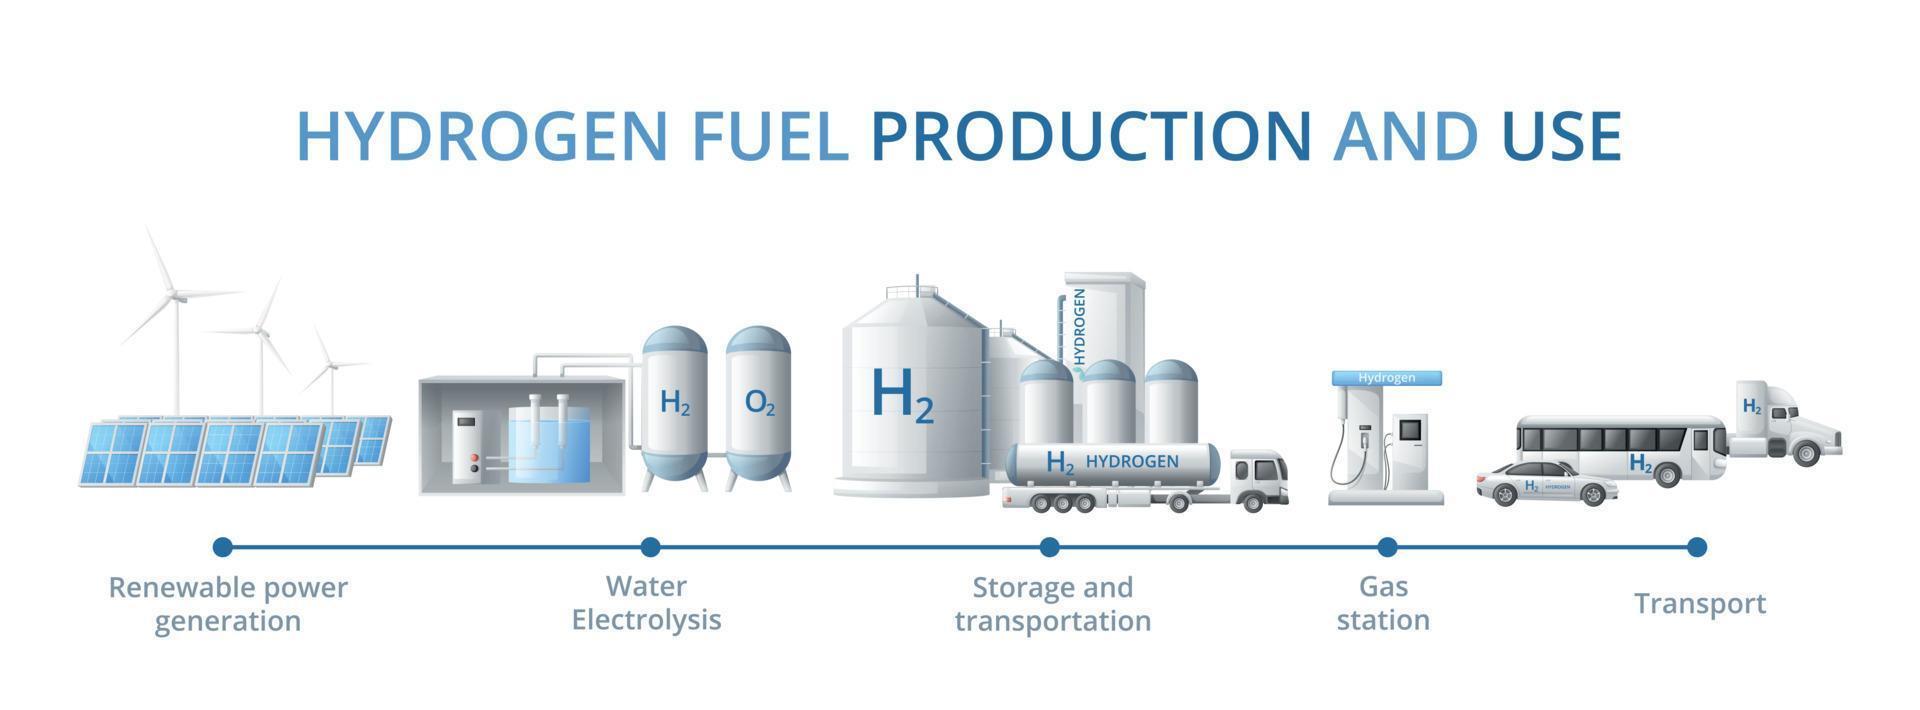 hydrogène carburant production infographie vecteur